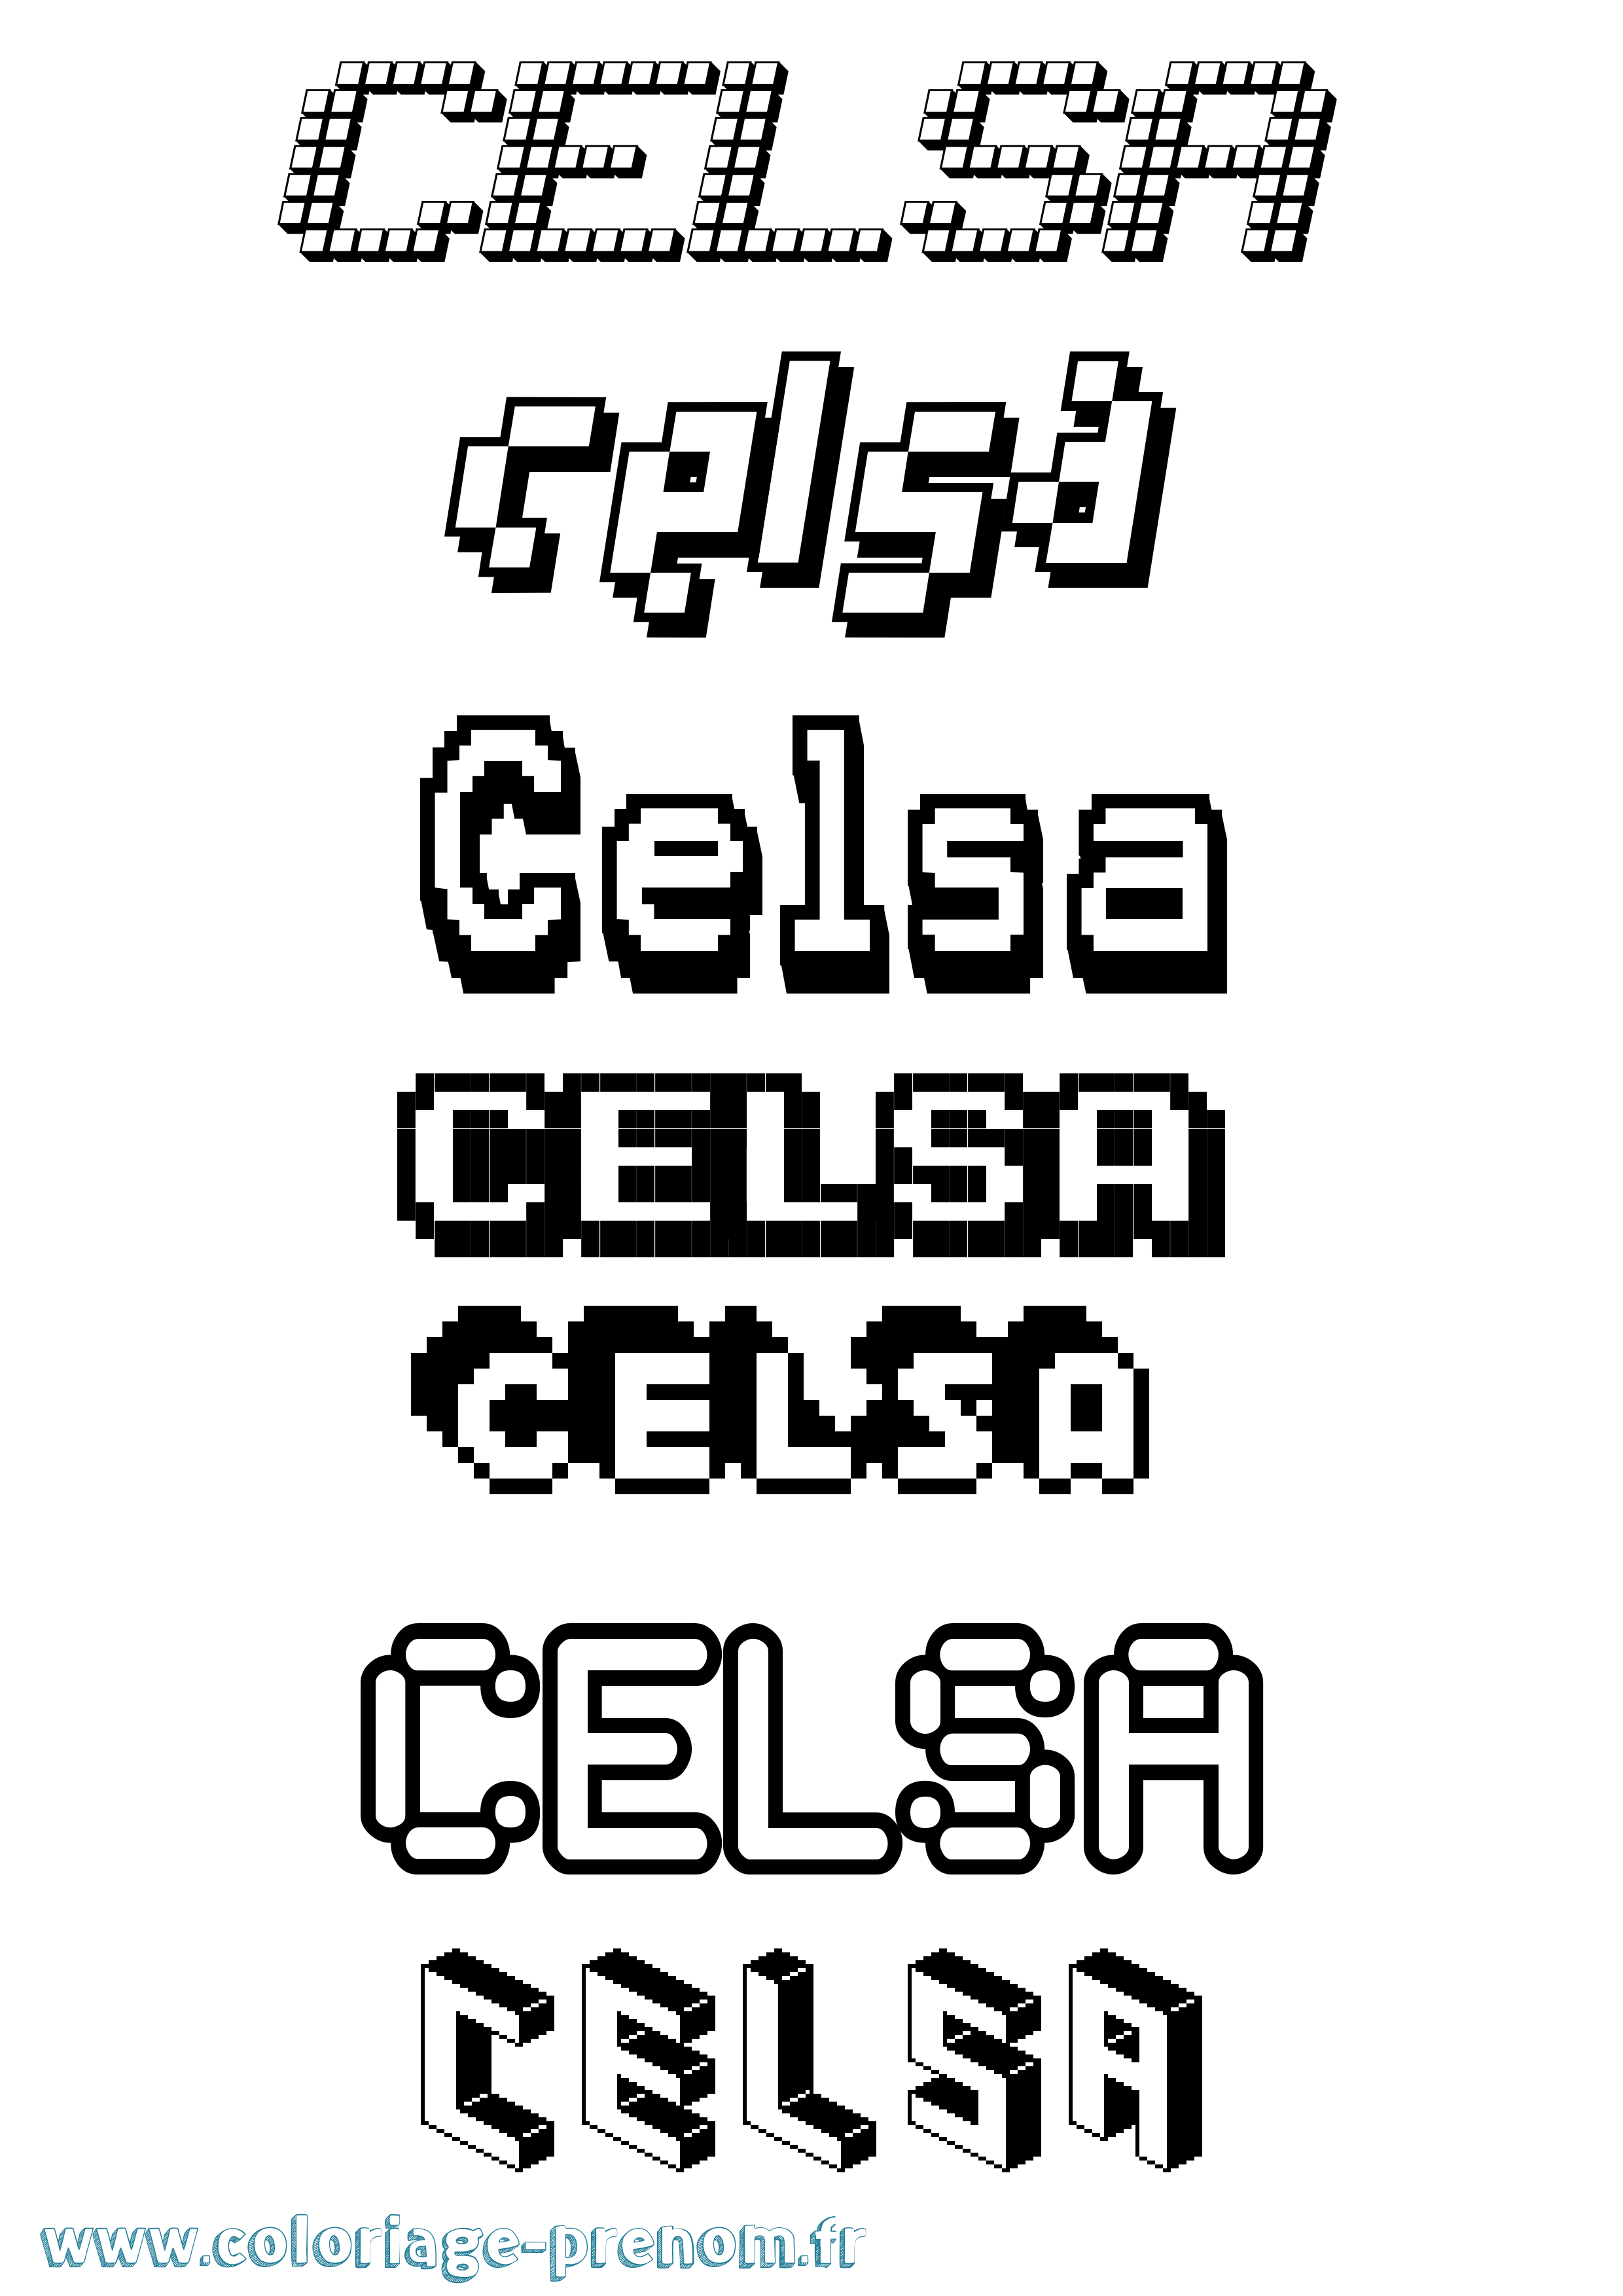 Coloriage prénom Celsa Pixel